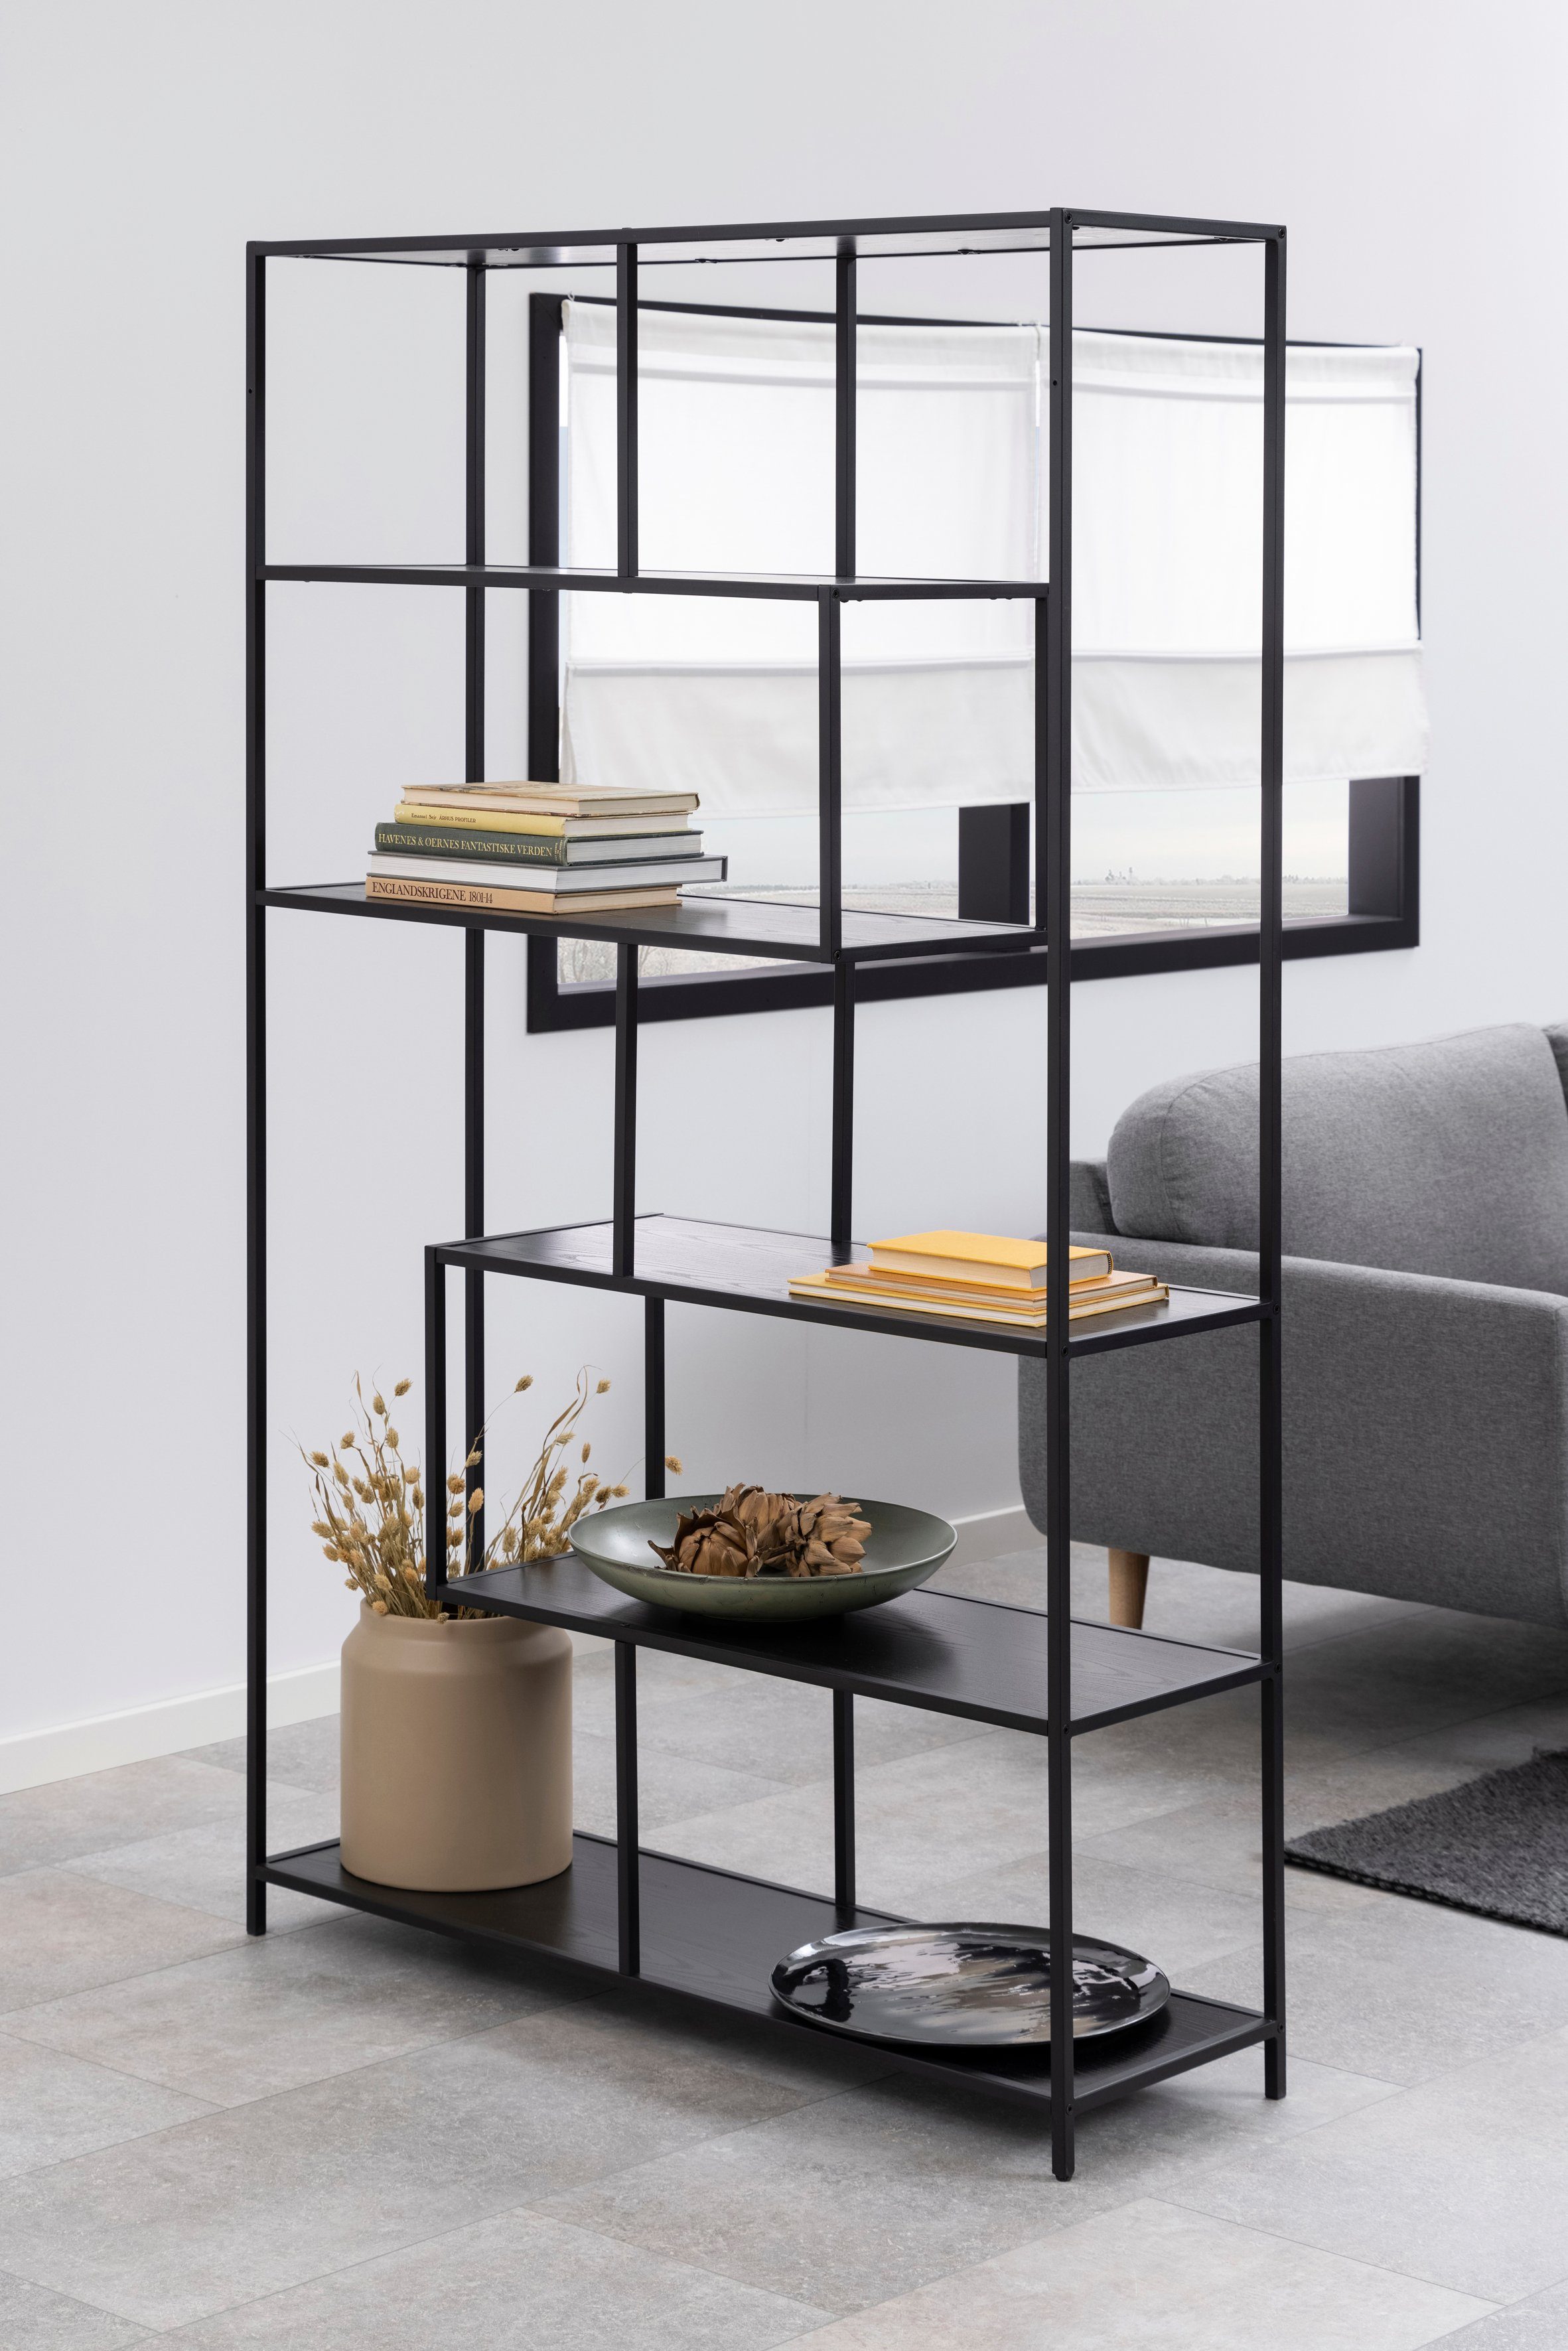 ACTONA GROUP Bücherregal, 5 matt Esche Details | Einlegeböden, schwarz modernes schwarz schwarz asymmetrische / Design, Metallgestell